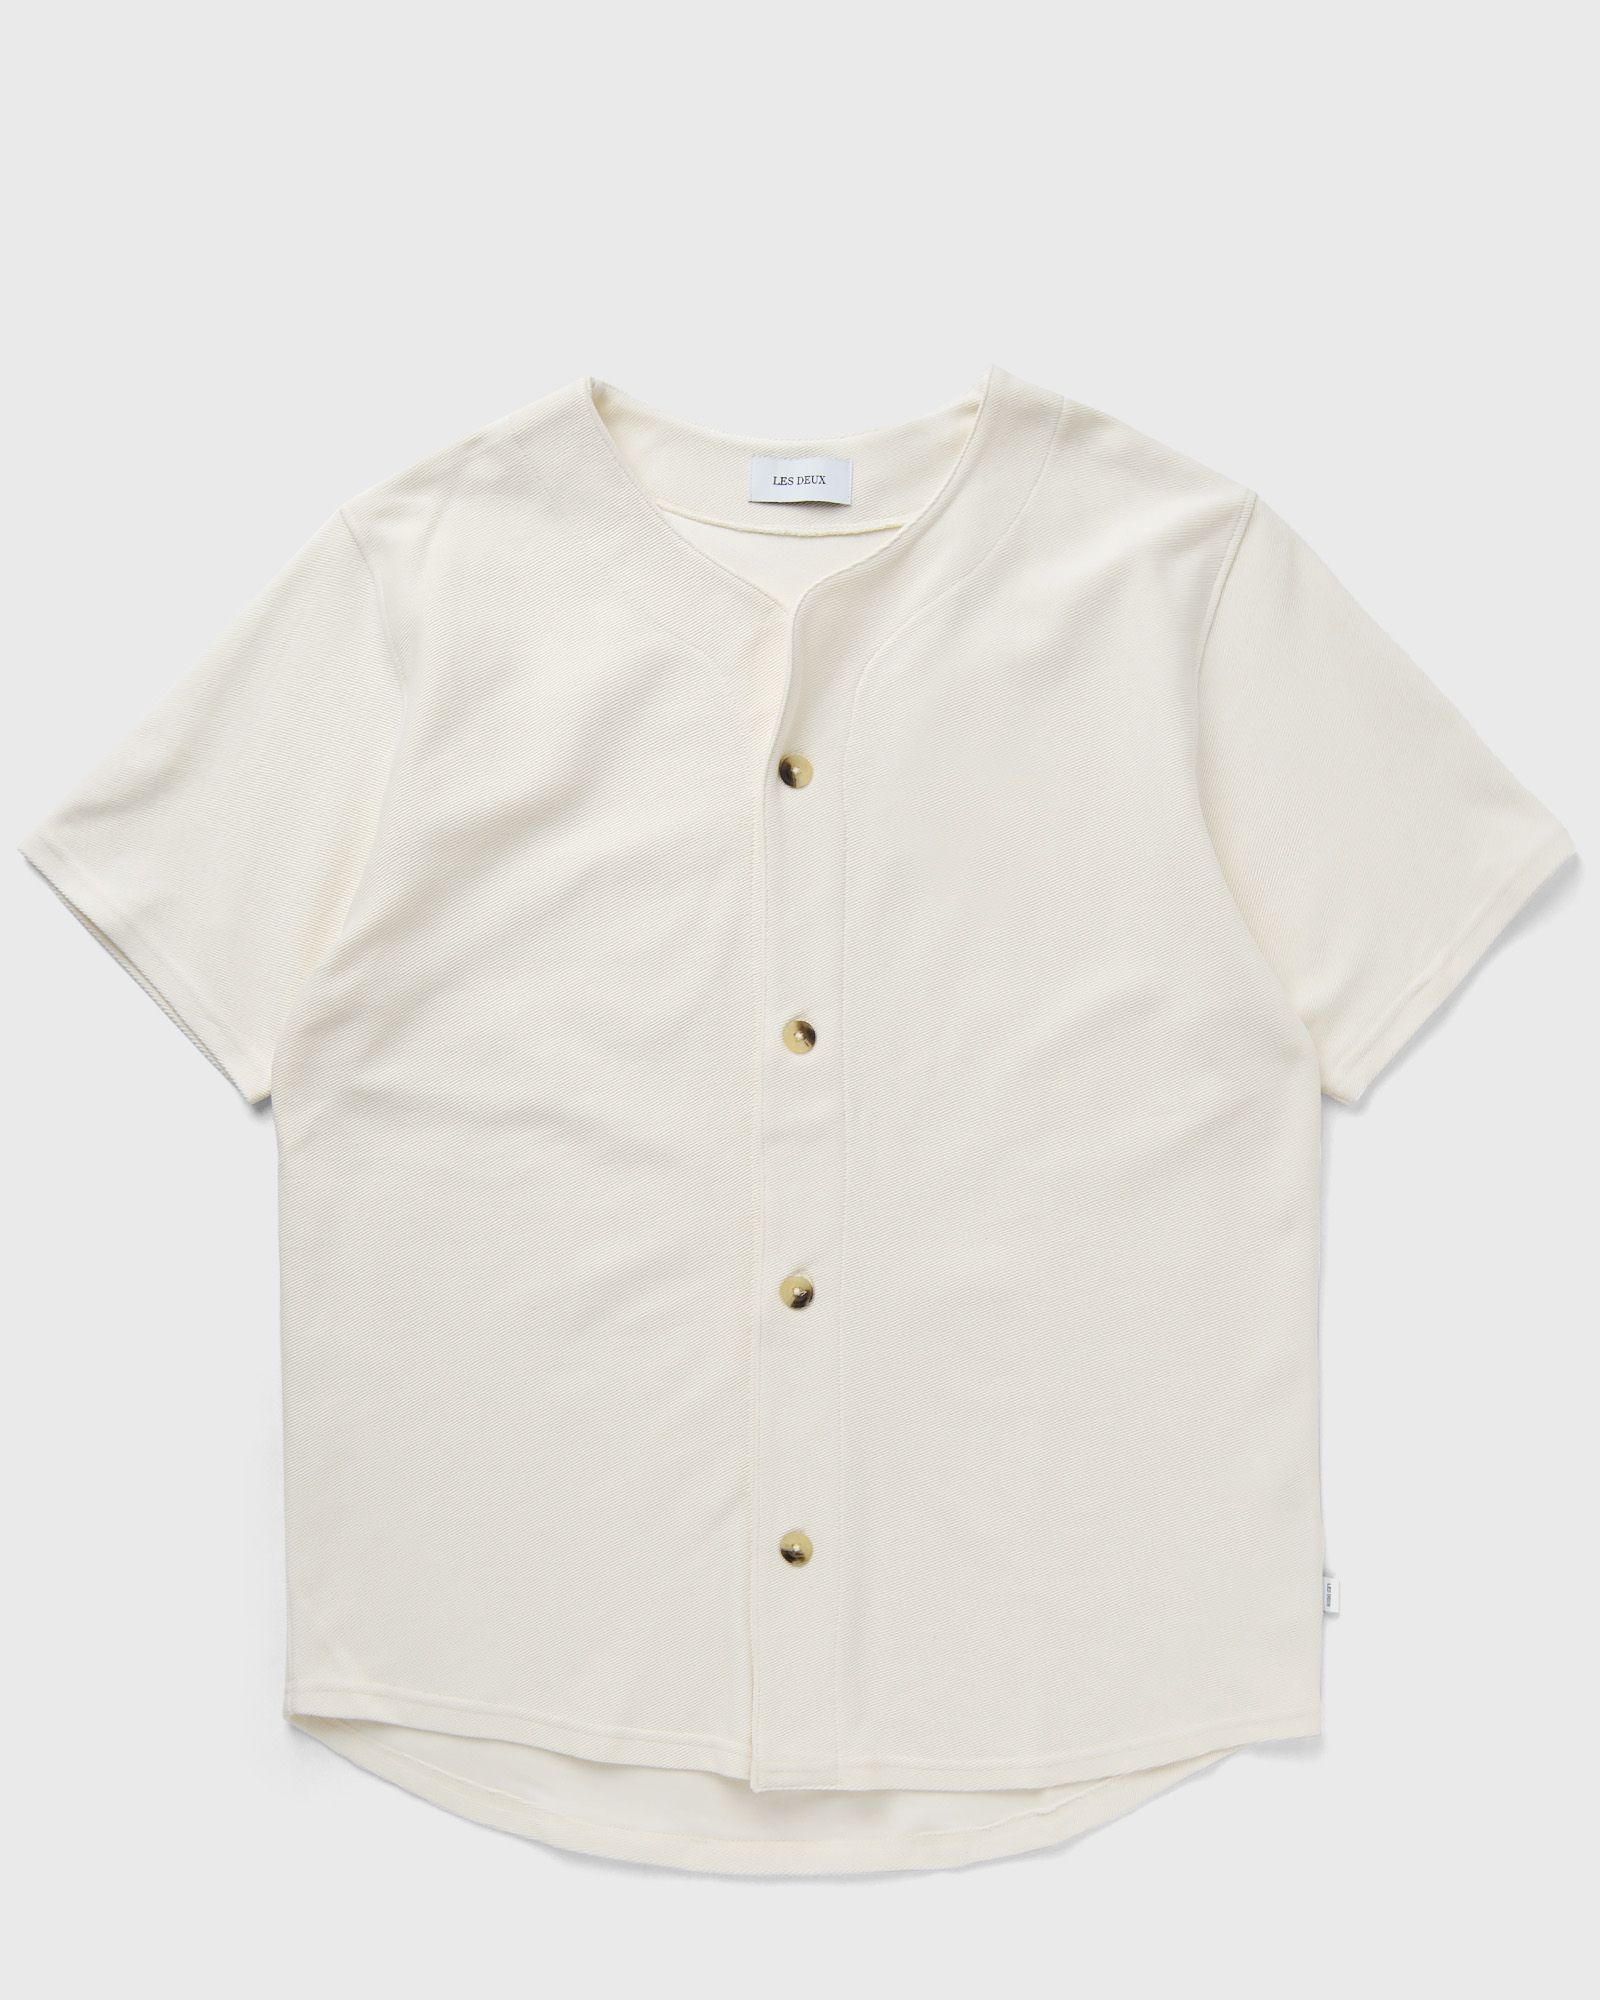 Les Deux - barry baseball jersey ss shirt men overshirts|shortsleeves beige in größe:xl